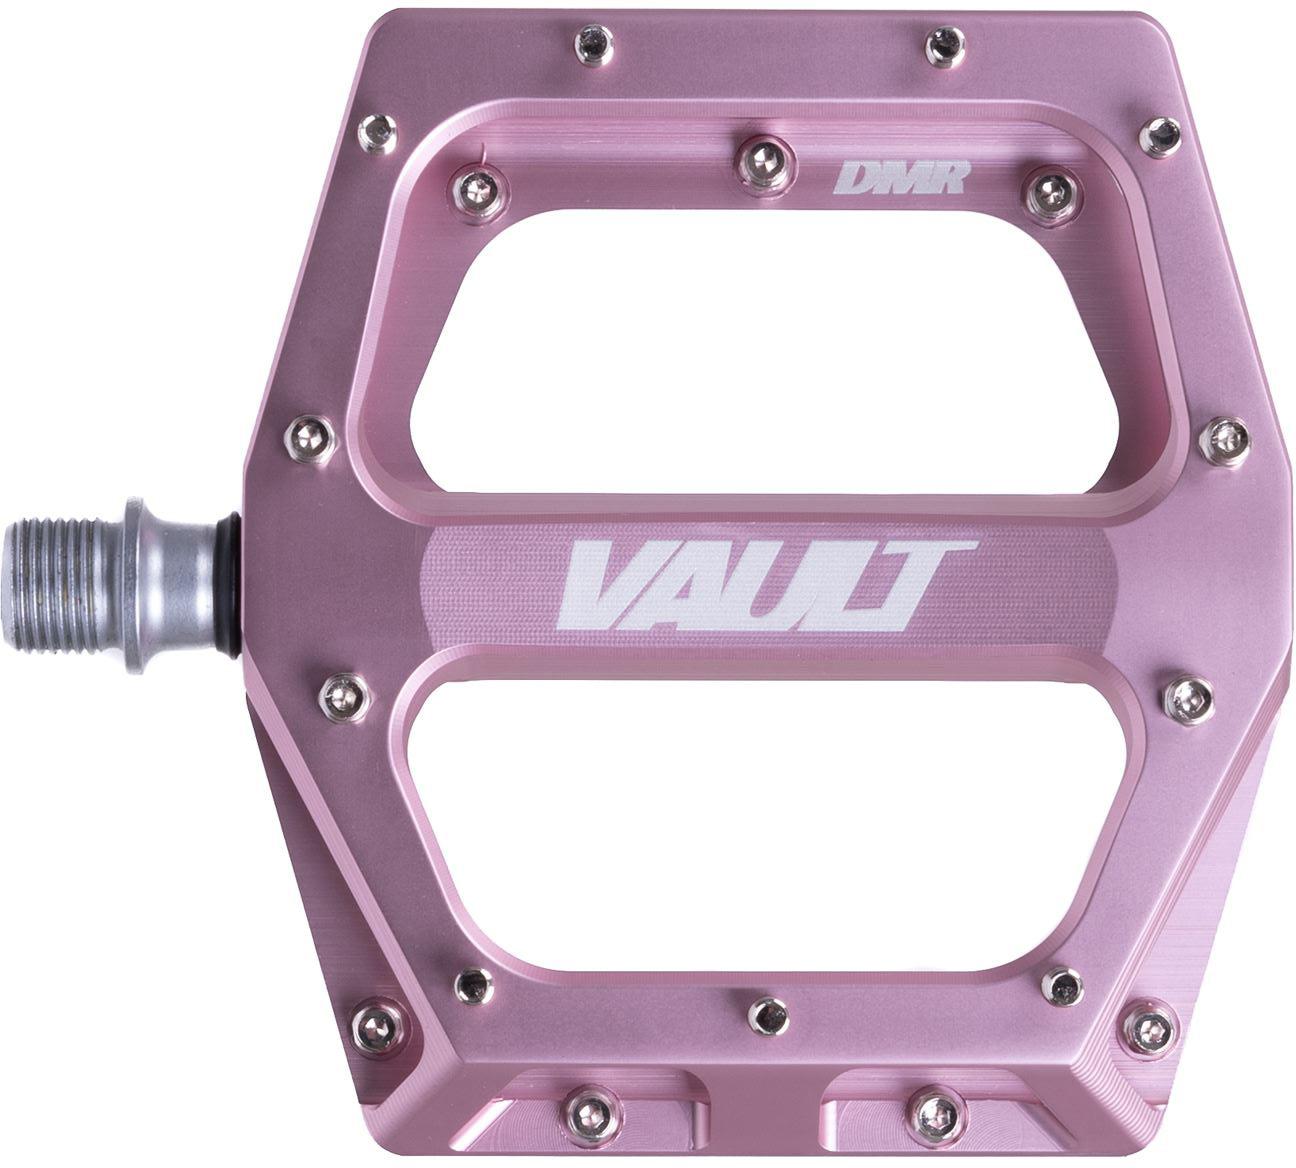 Dmr Vault V2 Pedals - Pink